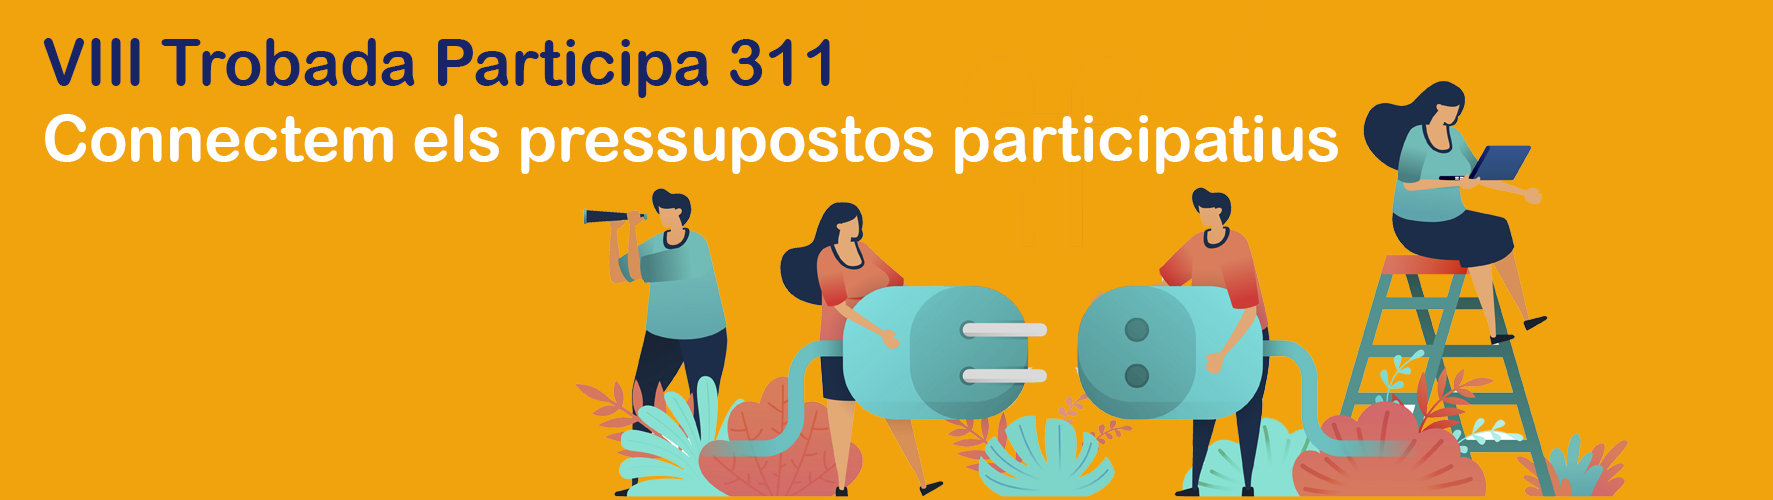 Vuitena Trobada Plataformes Participa311: Connectem els pressupostos participatius 